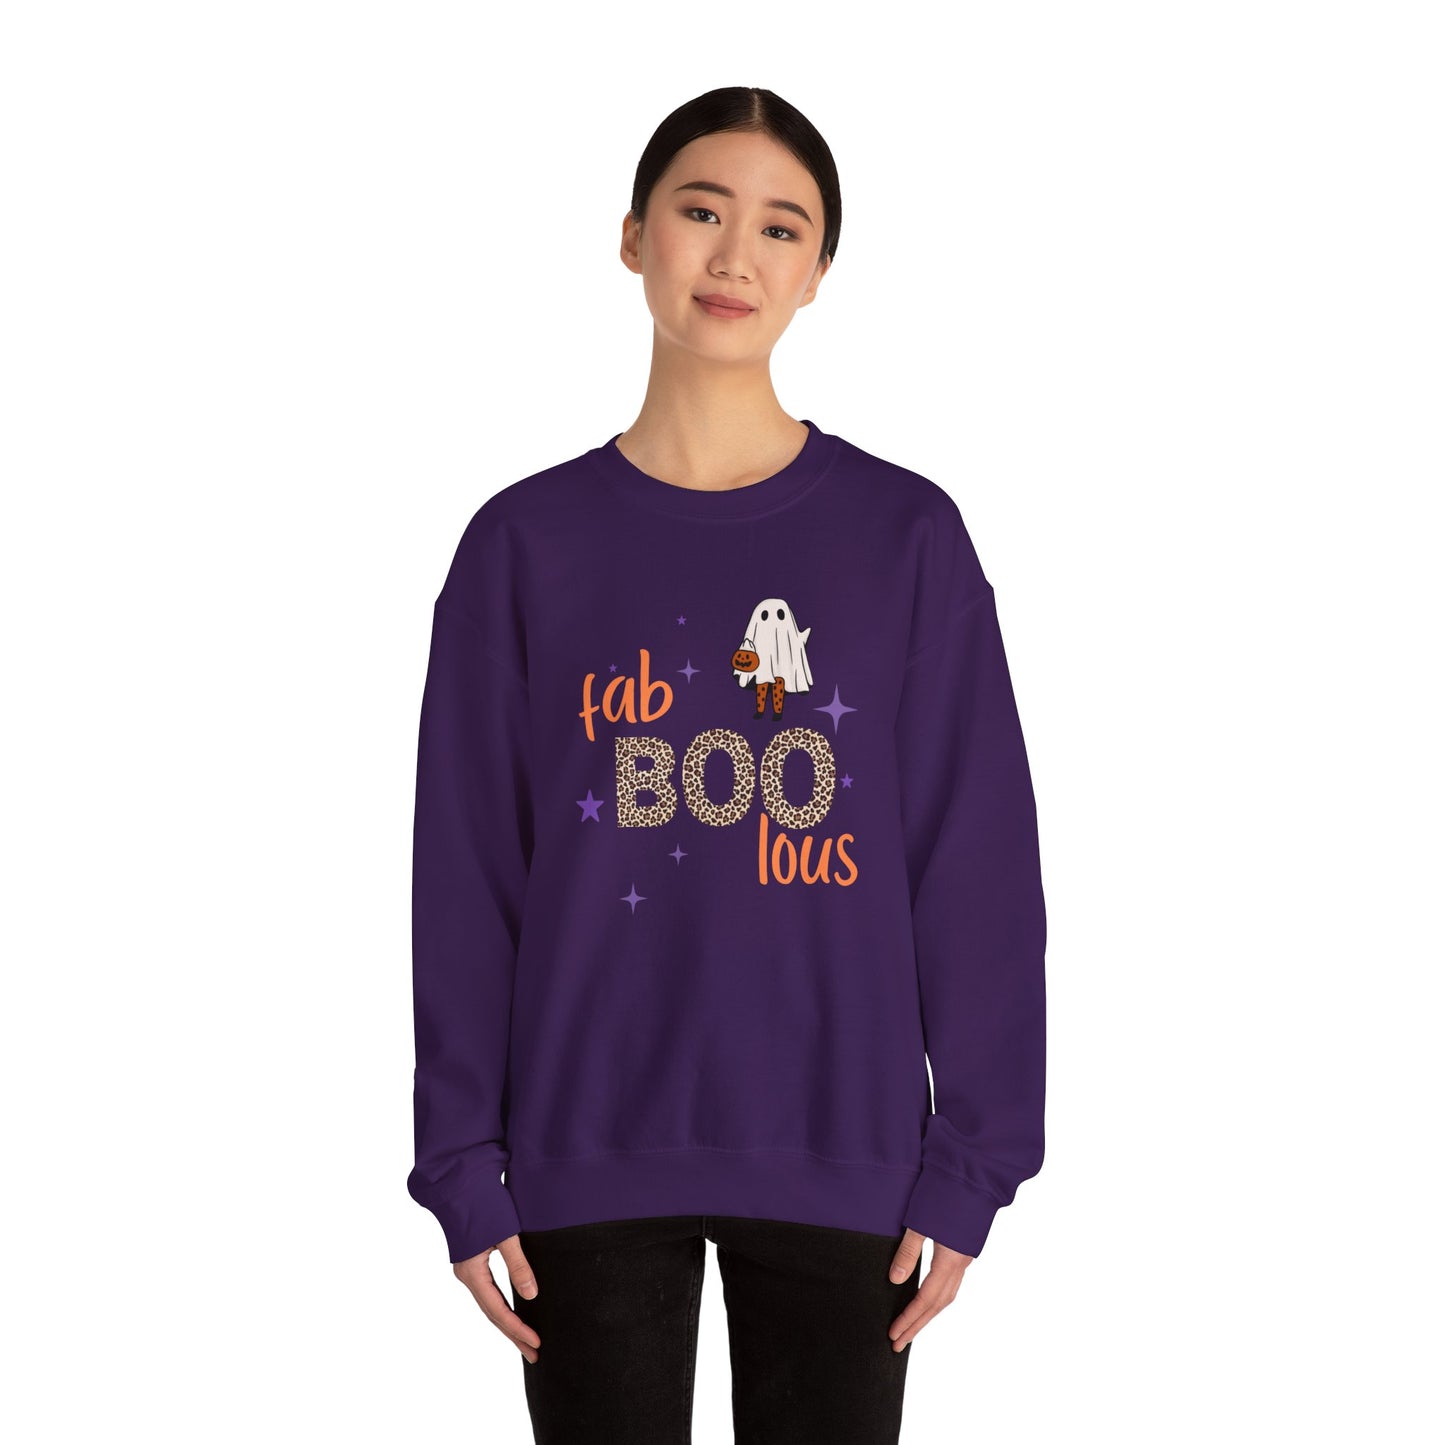 Halloween Fab BOO Lous Sweatshirt